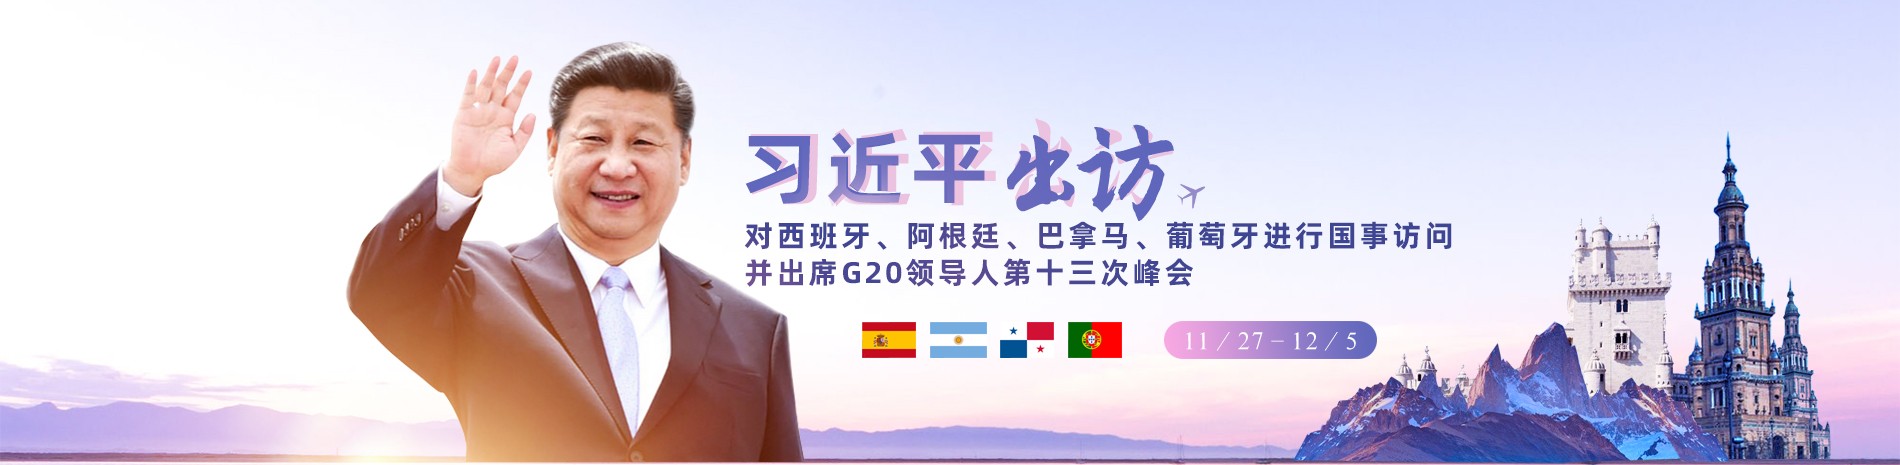 习近平出席G20领导人第十三次峰会